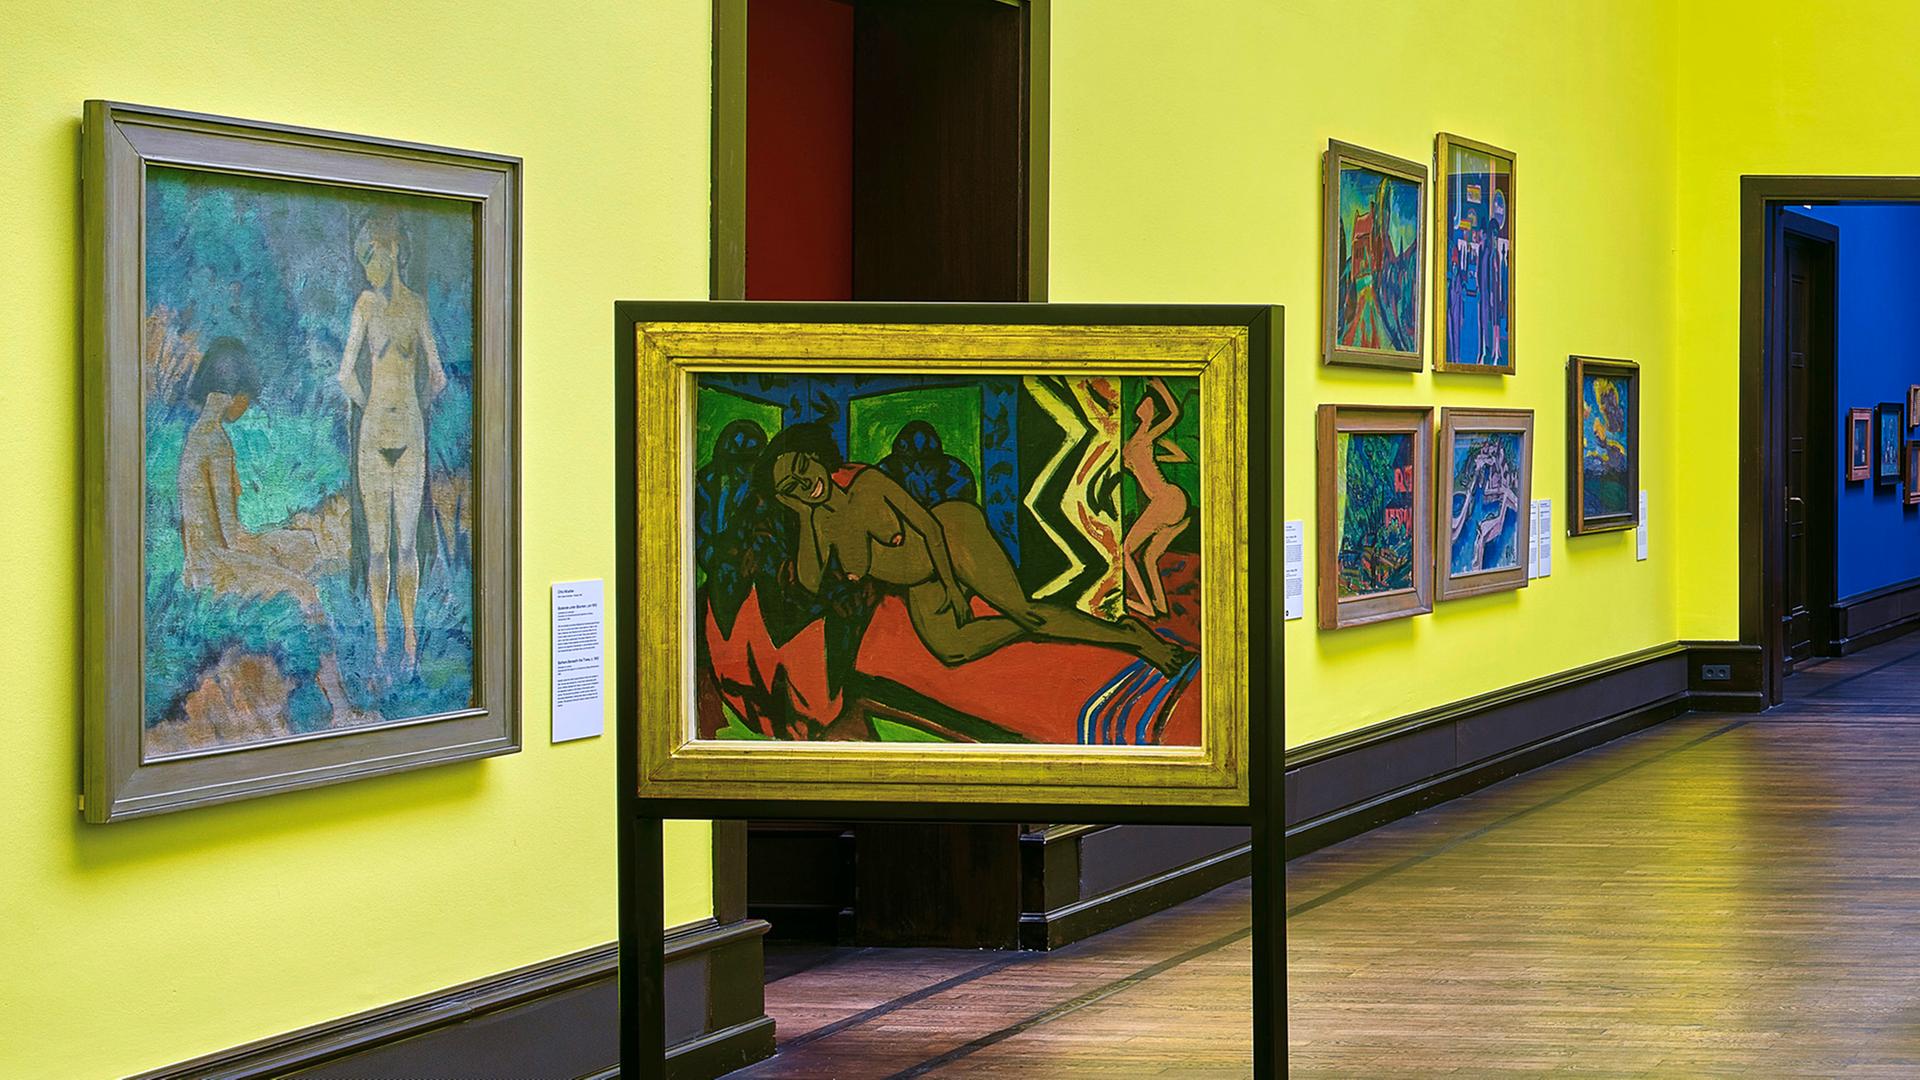 Das Bild "Schlafende Milli" von Ernst Ludwig Kirchner hängt in einer Ausstellung in der Kunsthalle Bremen.